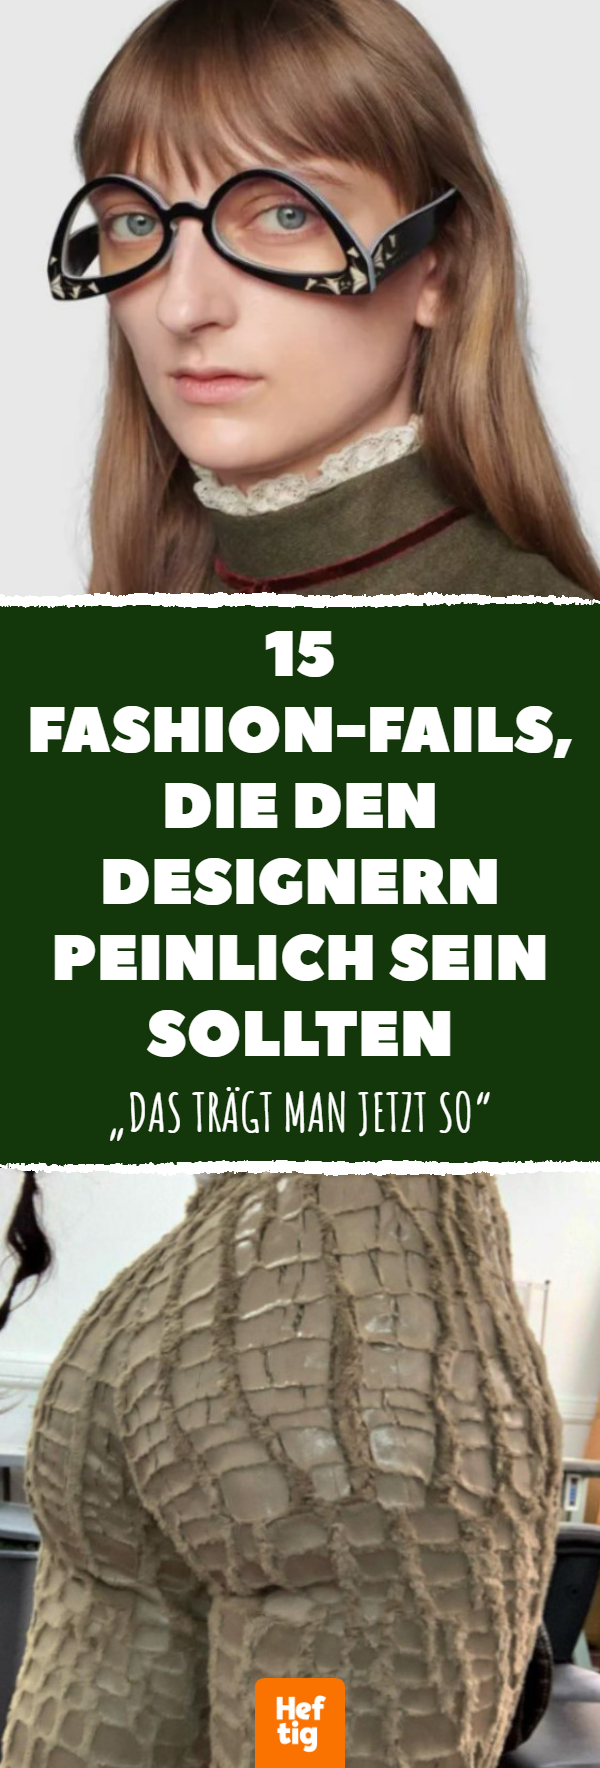 Fashion-Fails: 15 witzige Bilder von Mode-Debakeln